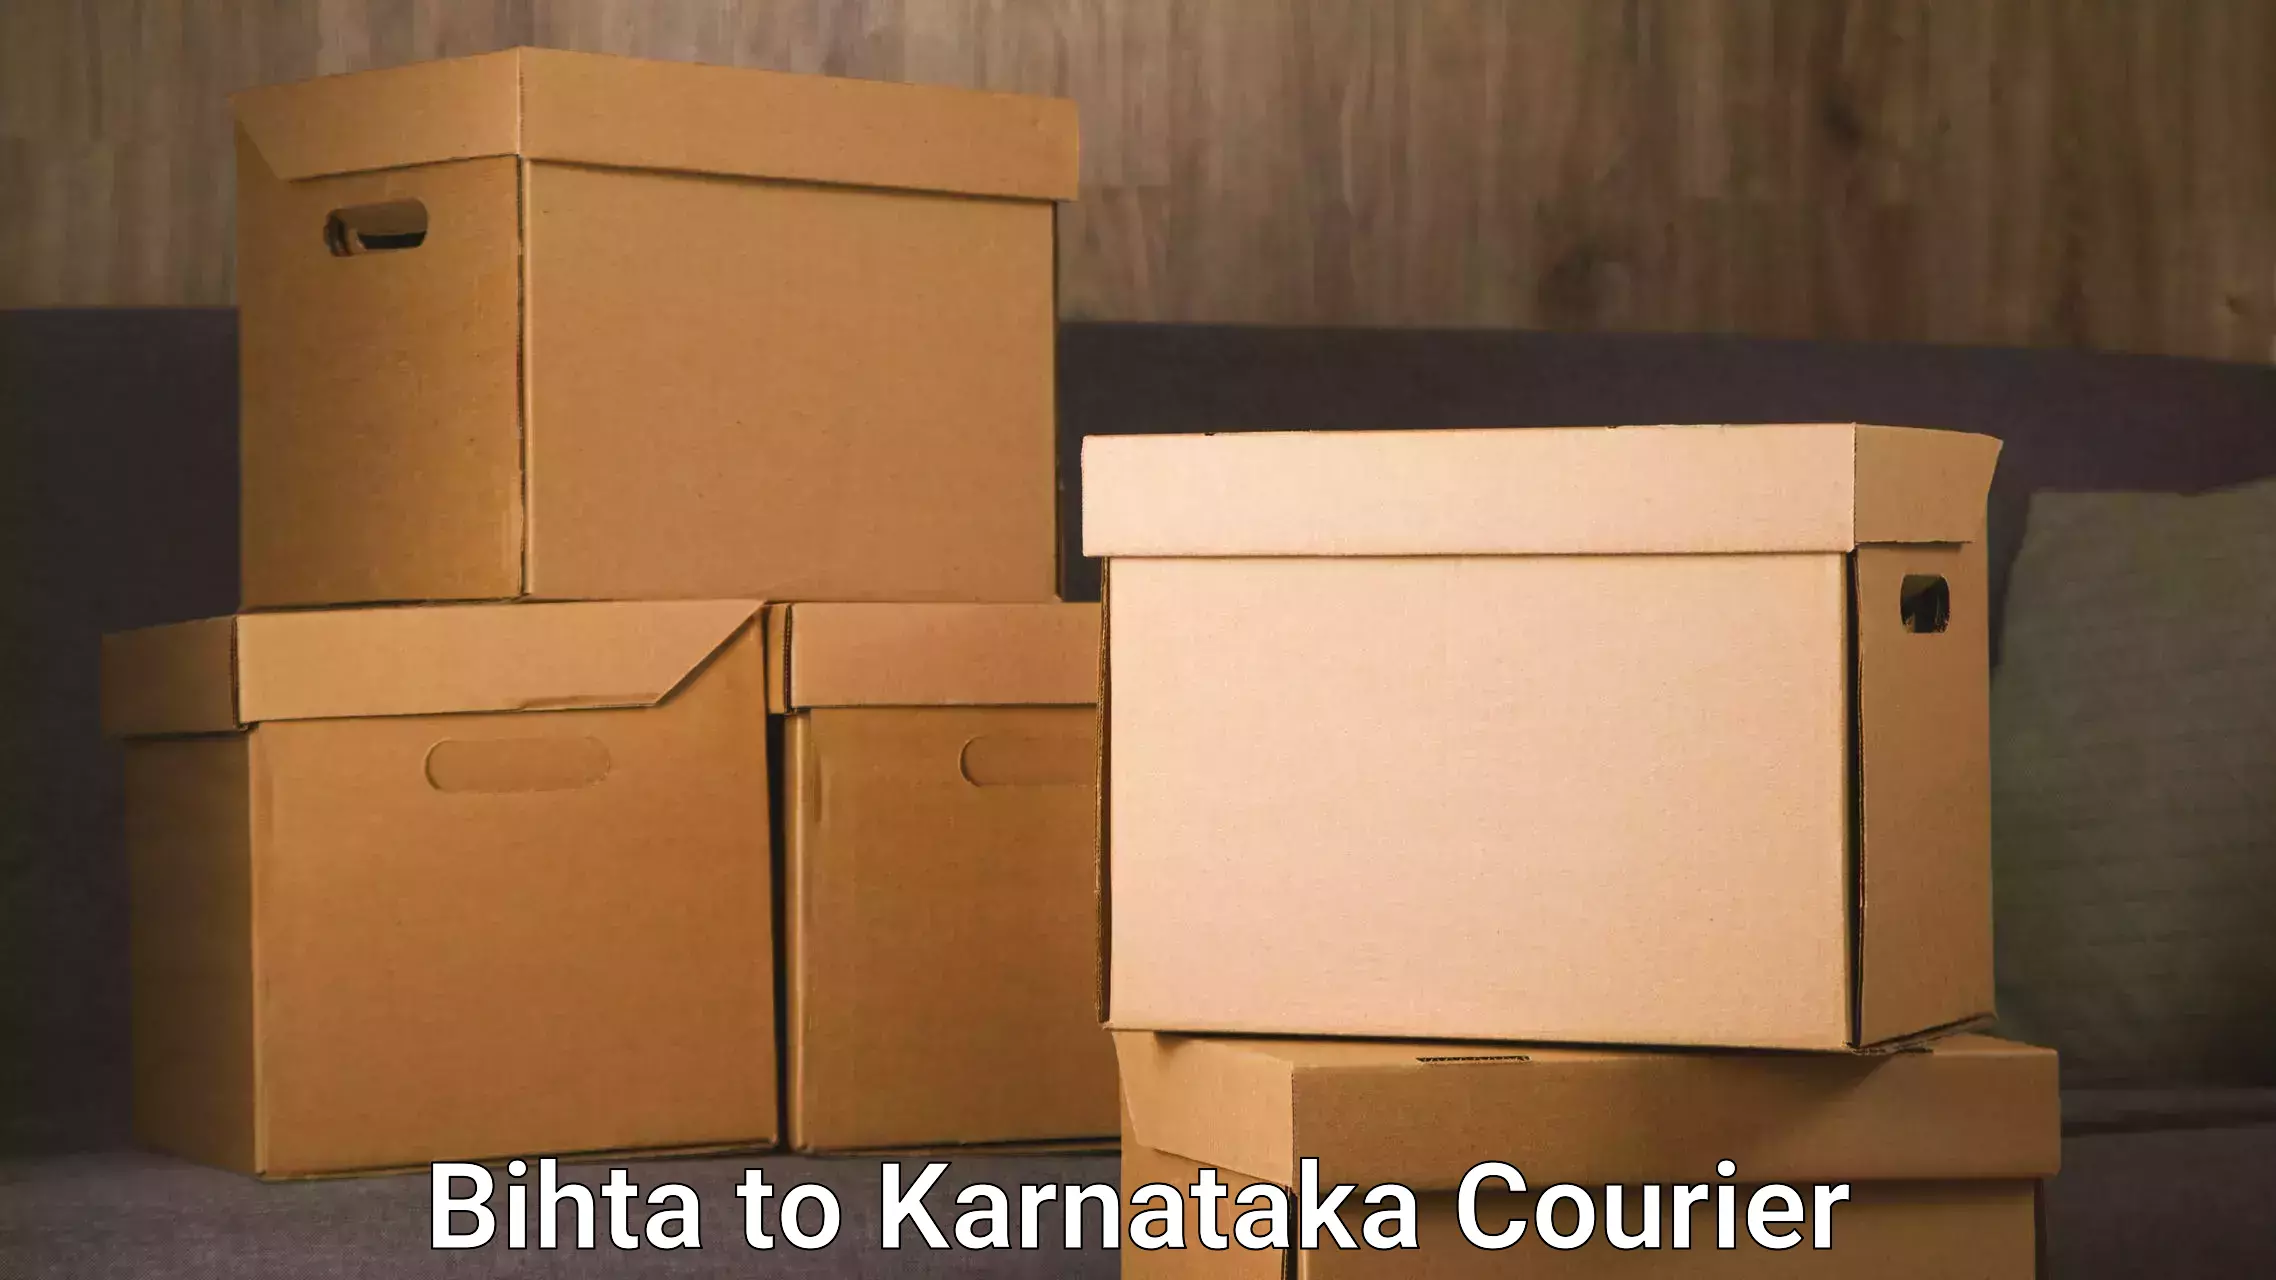 Residential furniture transport Bihta to Kalaburagi